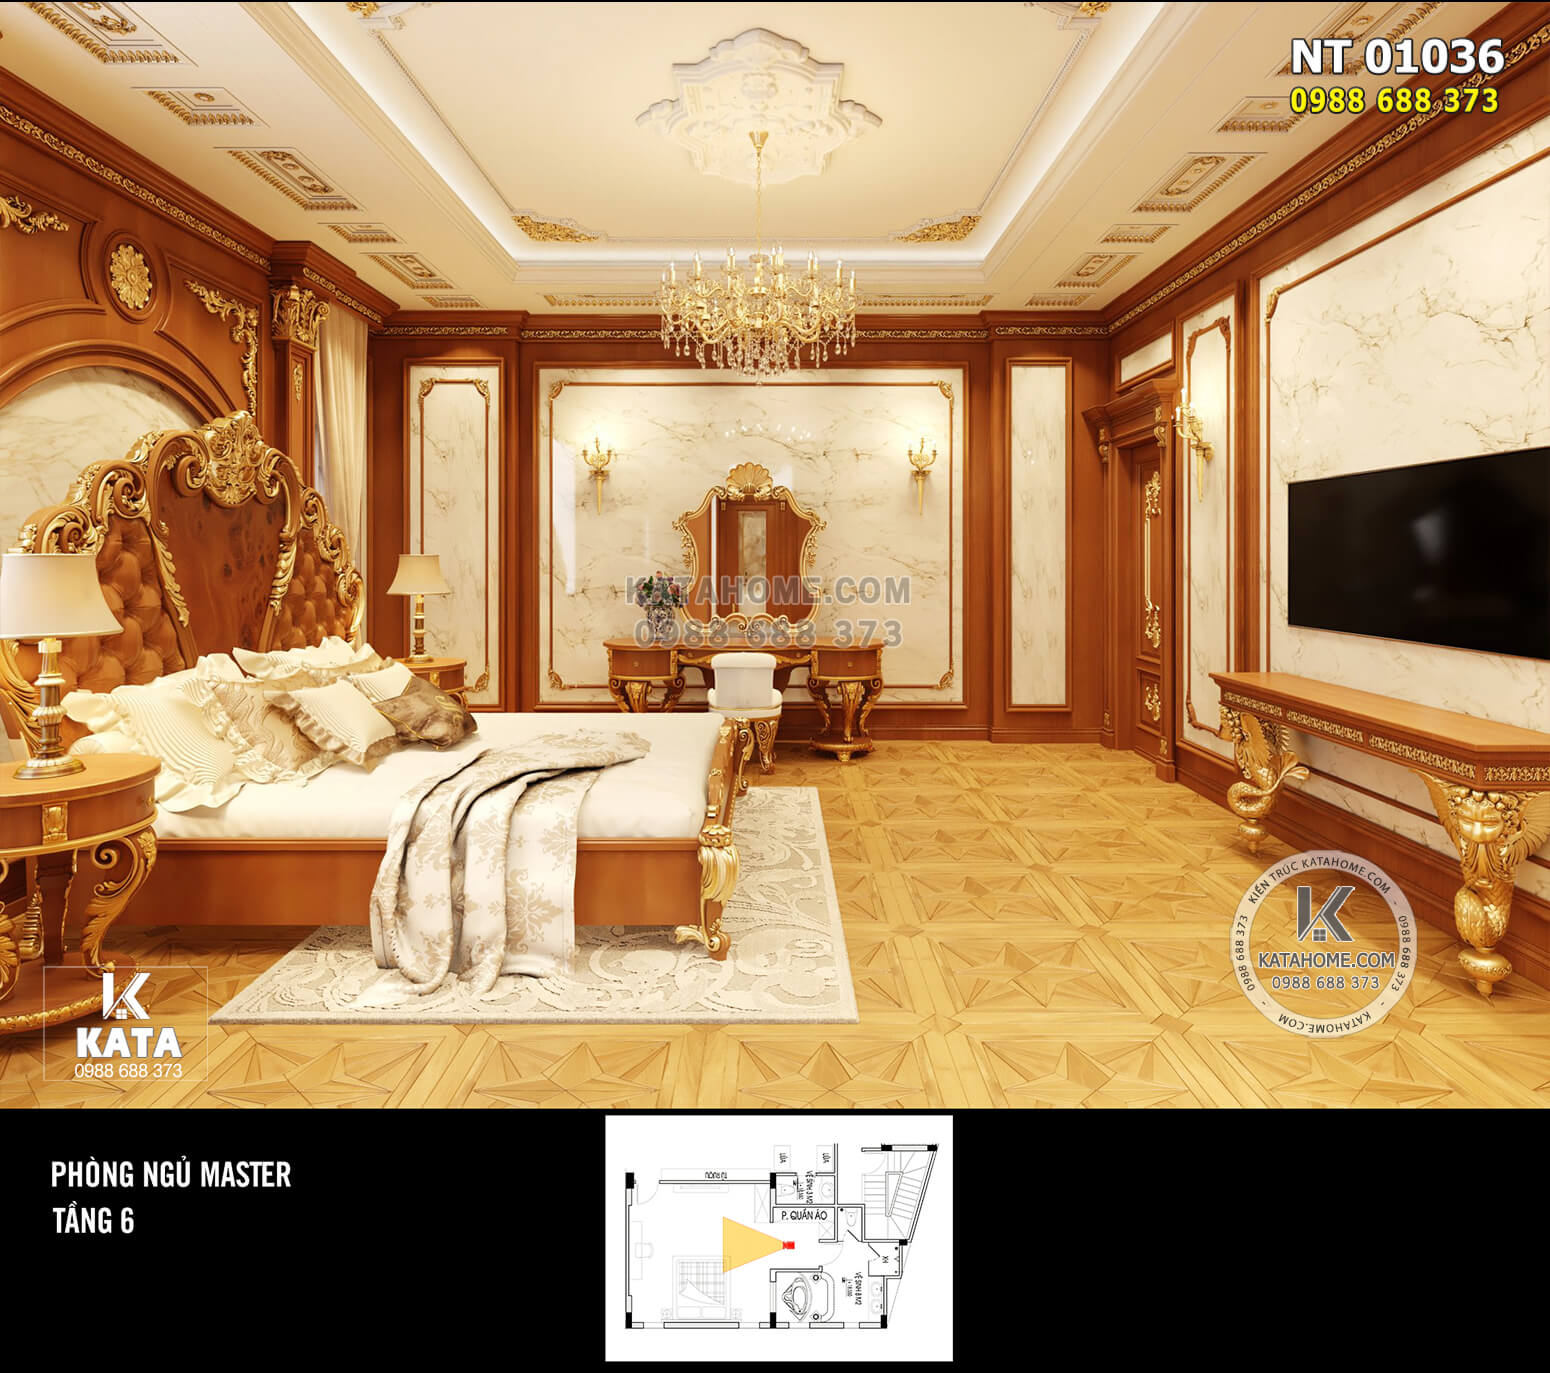 Hình ảnh: Chiếc giường King là điểm nhấn của căn phòng ngủ Master